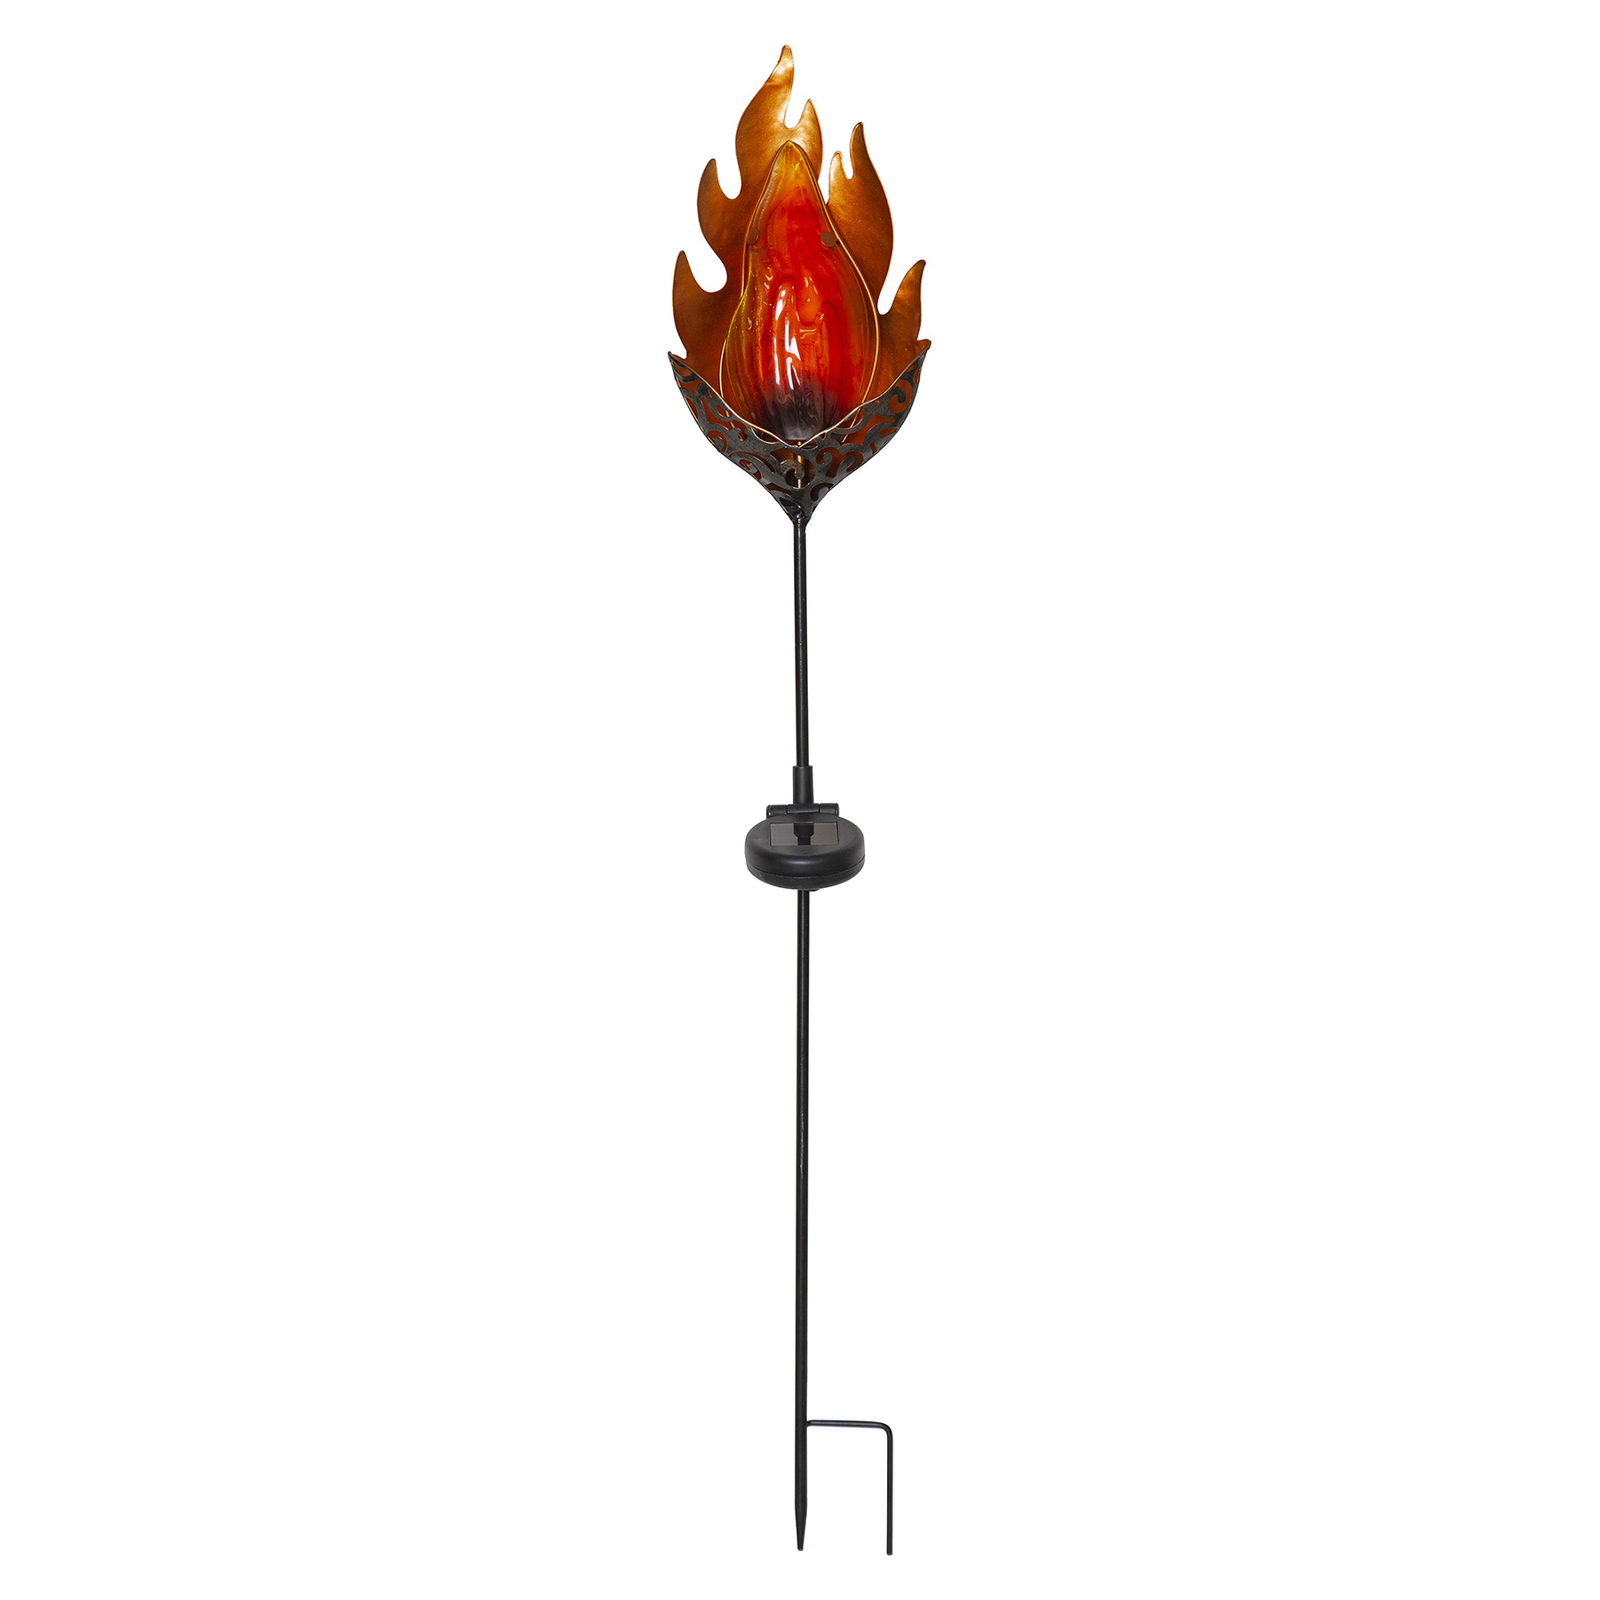 Candeeiro solar Melilla Flame LED em forma de chama